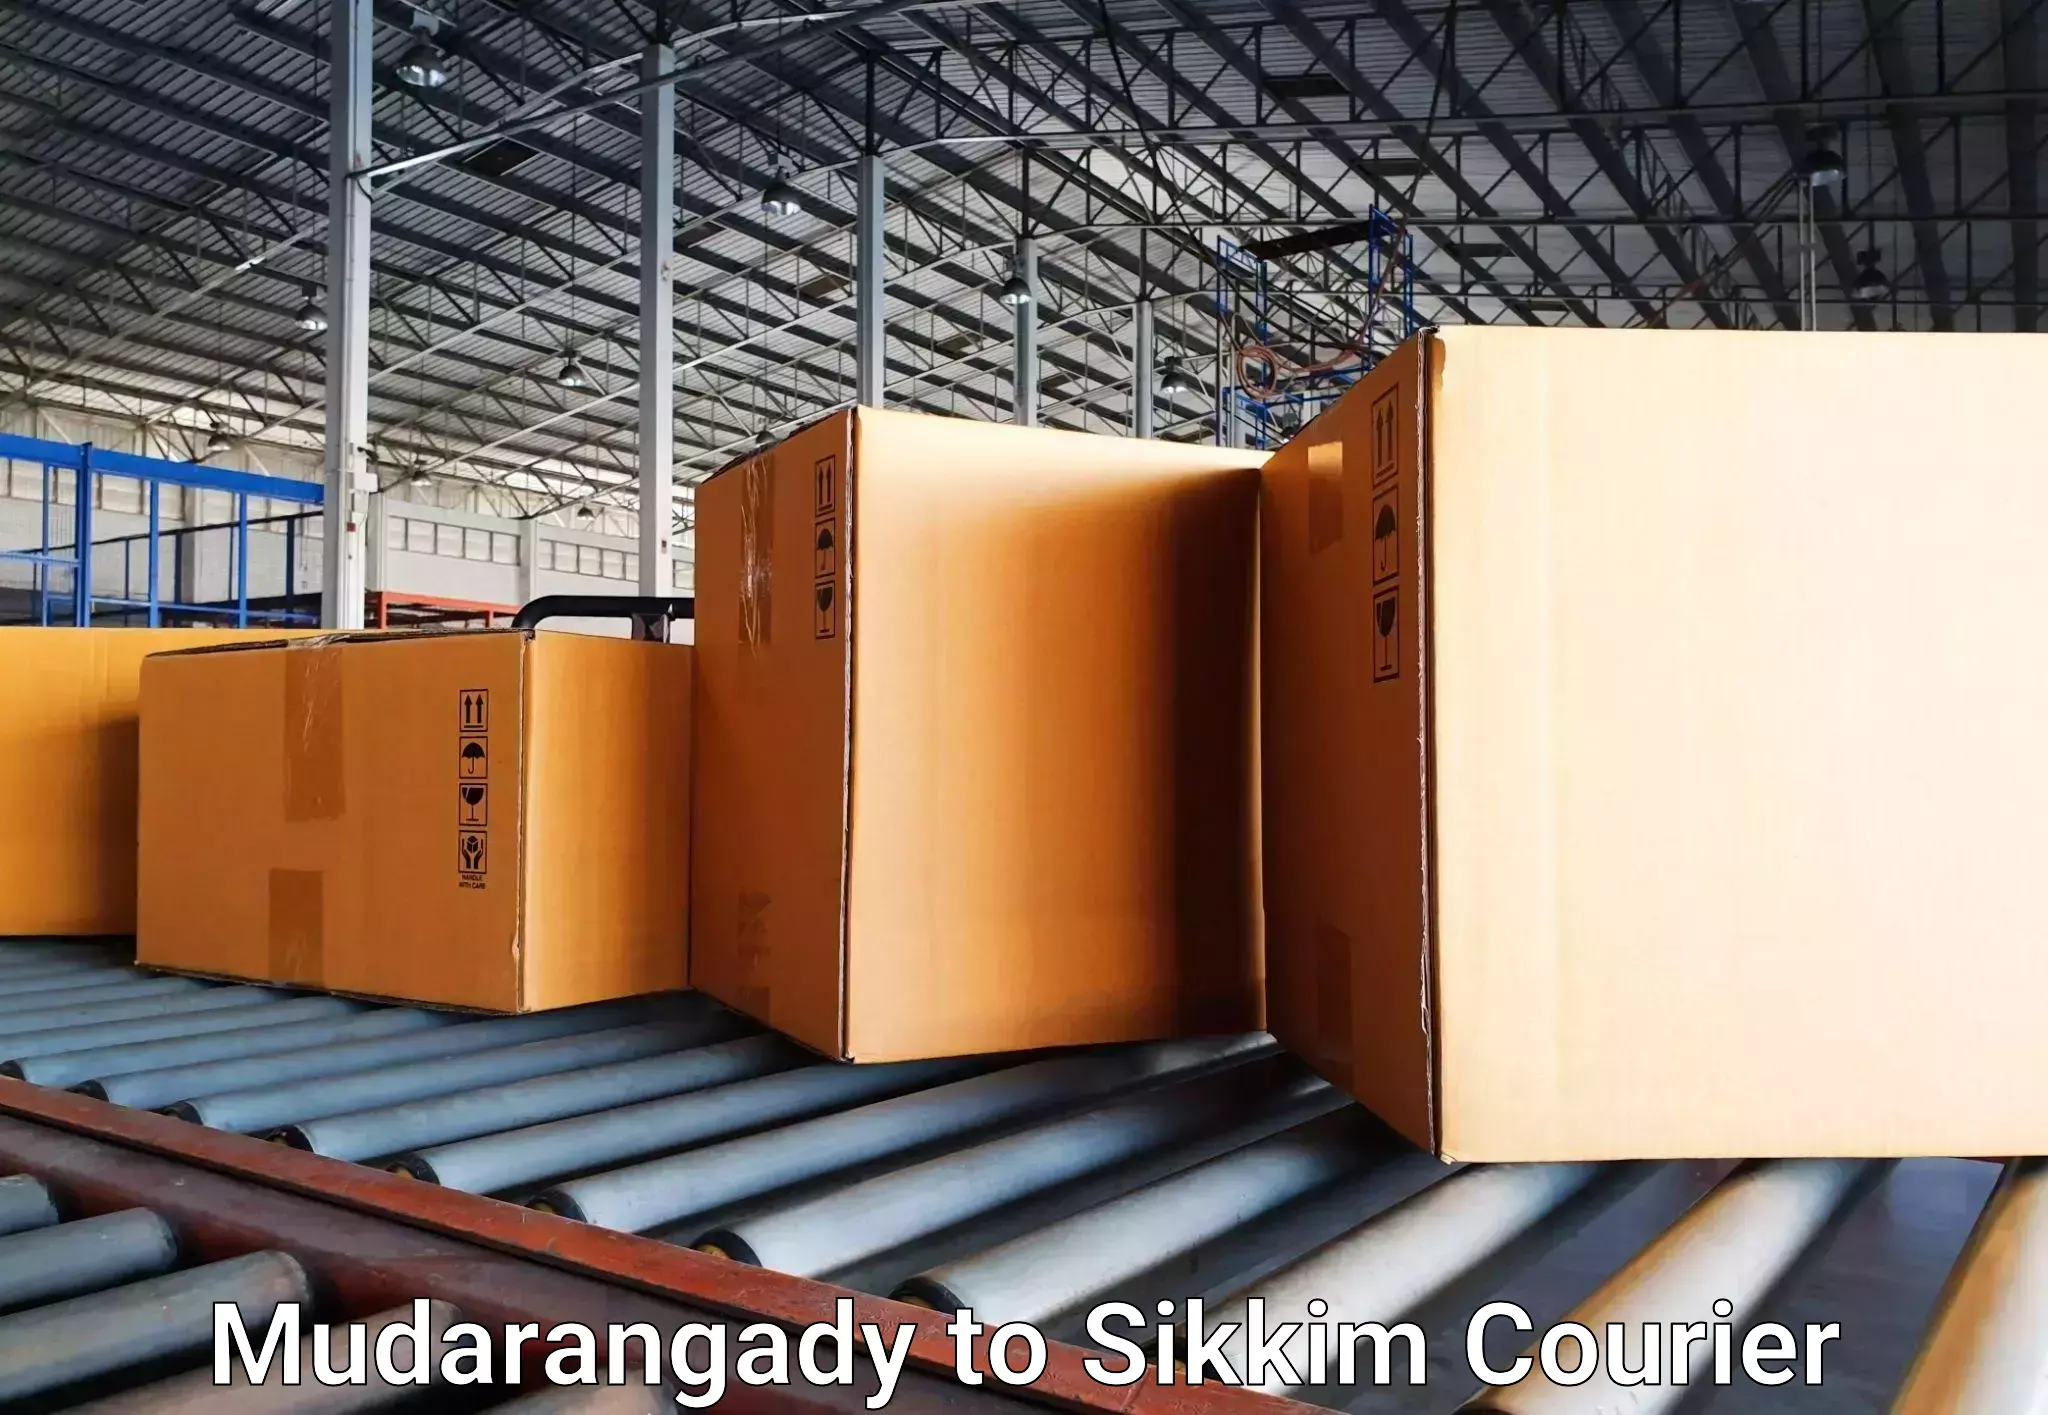 Baggage transport professionals Mudarangady to Mangan